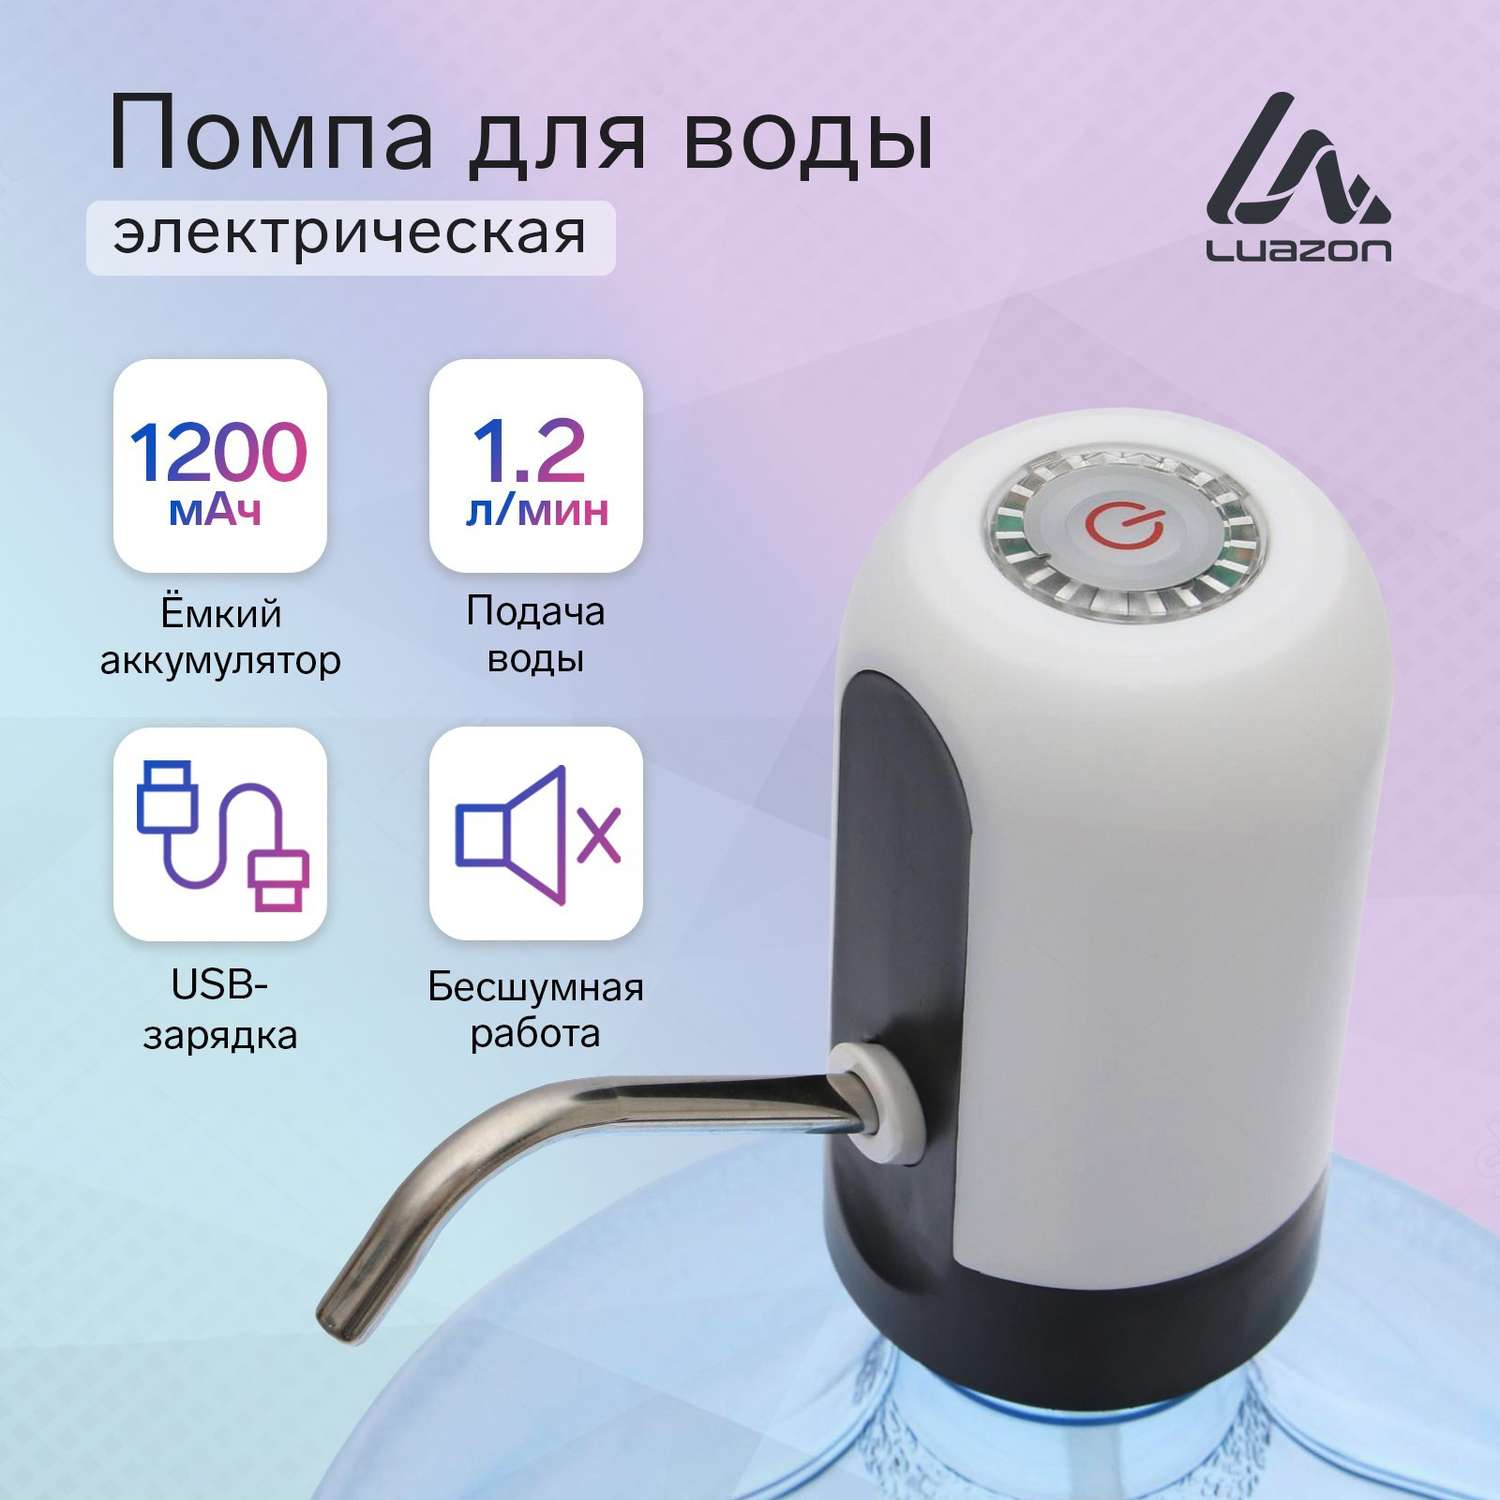 Помпа Luazon Home для воды LWP-05 электрическая 4 Вт 1.2 л/мин 1200 мАч от USB белая - фото 1